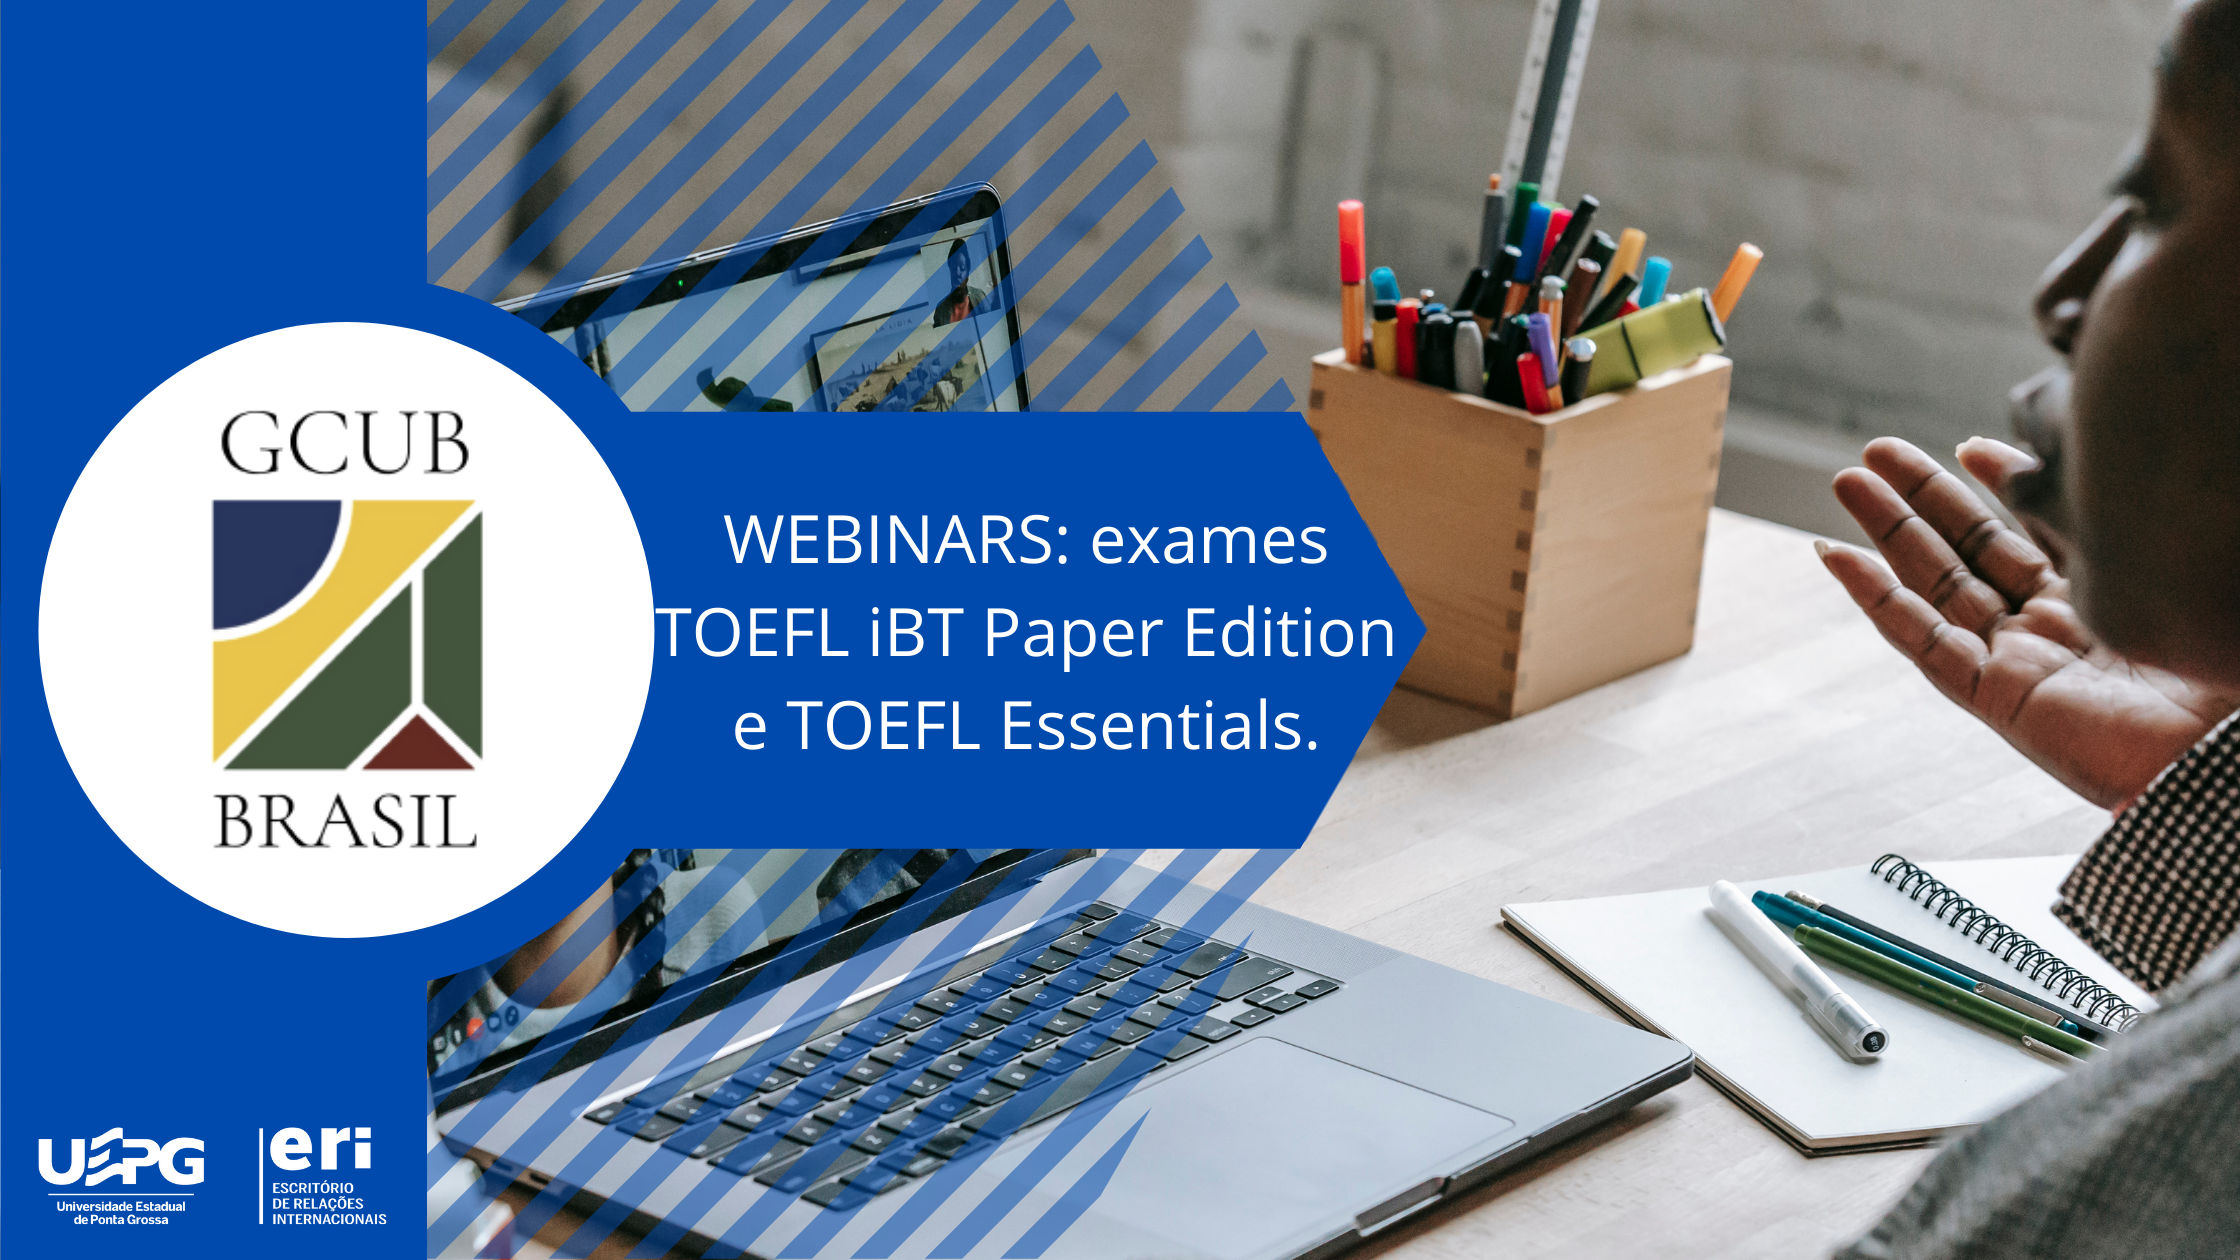 Webinars: TOEFL Exams and TOEFL Essentials